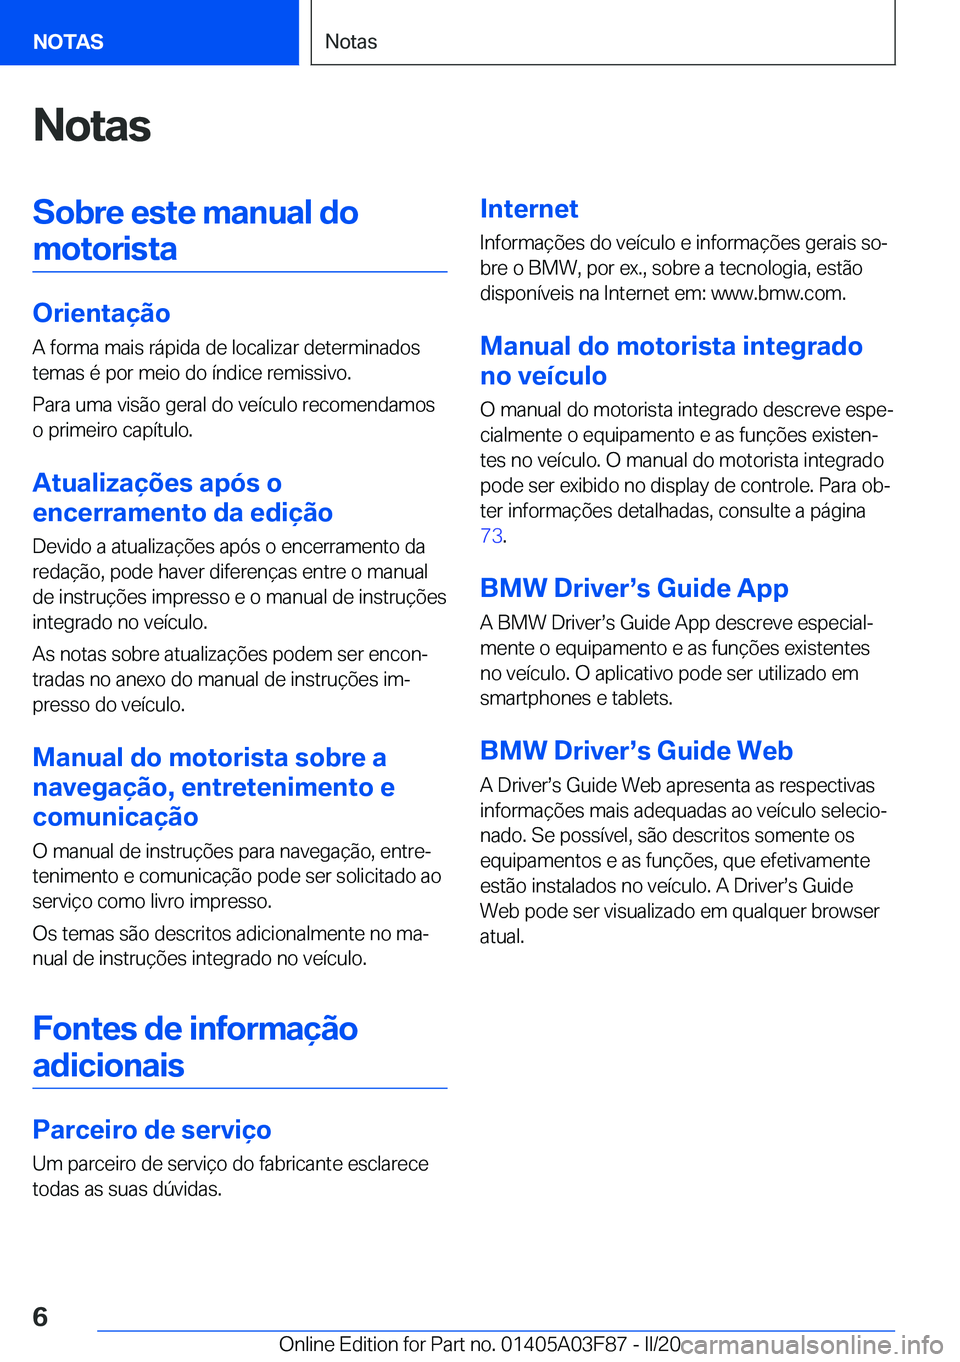 BMW 3 SERIES 2020  Manual do condutor (in Portuguese) �N�o�t�a�s�S�o�b�r�e��e�s�t�e��m�a�n�u�a�l��d�o�m�o�t�o�r�i�s�t�a
�O�r�i�e�n�t�a�